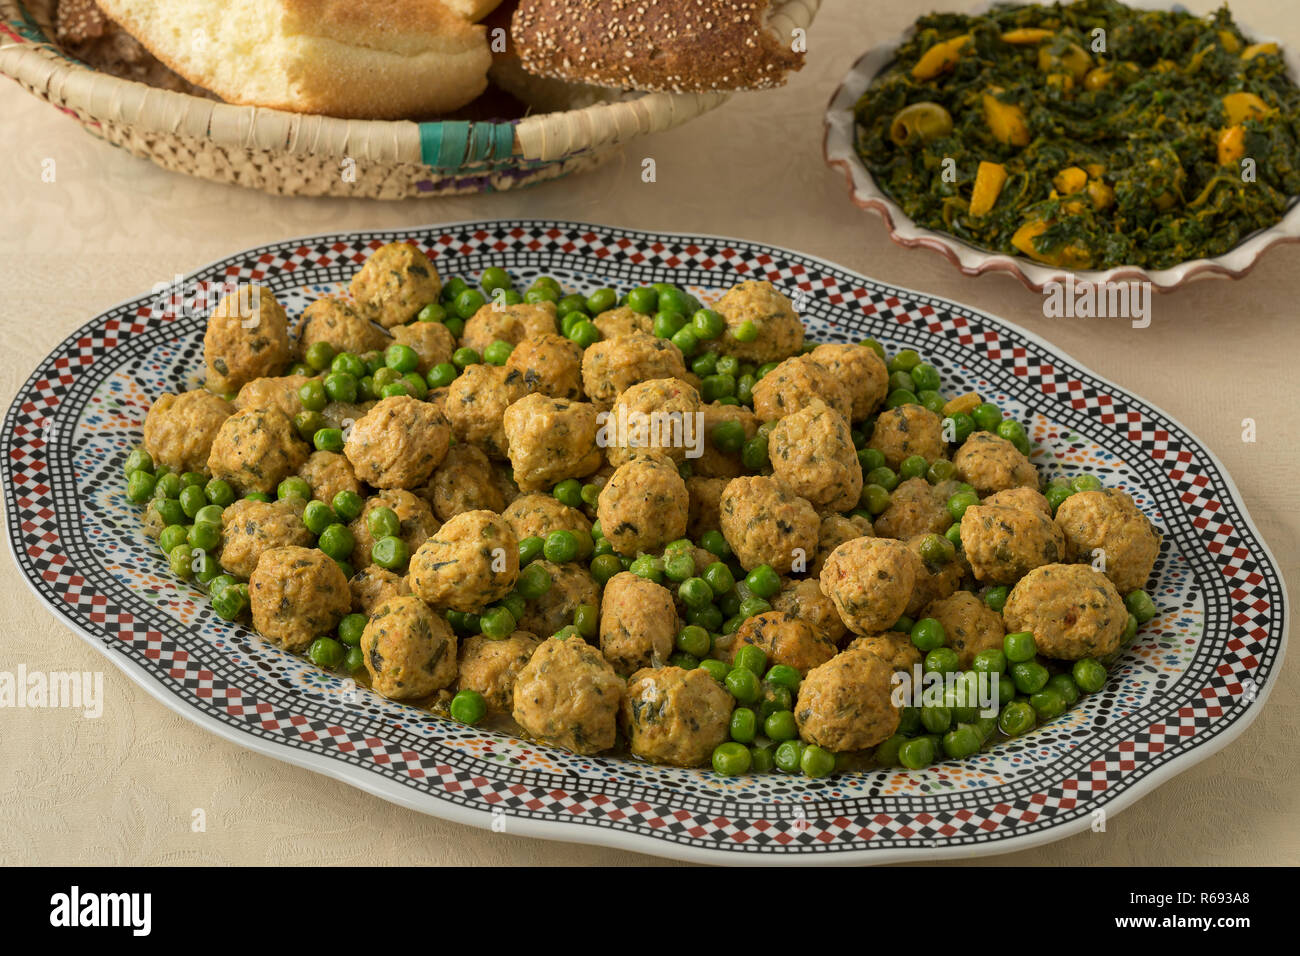 Avec le plat de poulet hachée de style marocain et boules de pois verts, salade d'épinards et de pain Banque D'Images